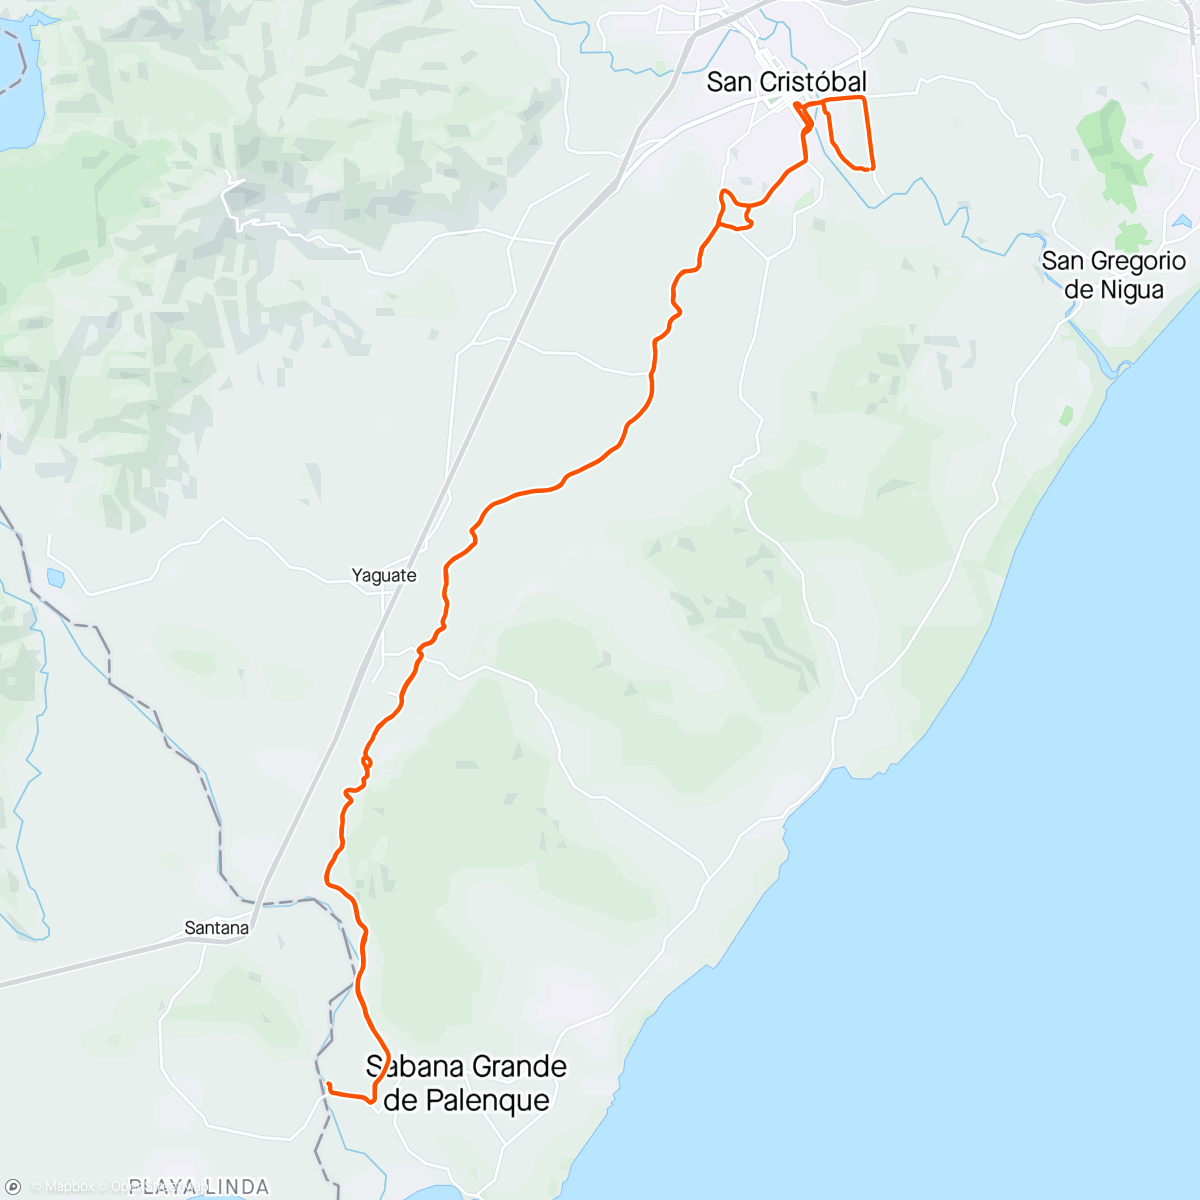 Map of the activity, Vuelta en bicicleta Nizao por Monte by RPC #MisterGPS #RPC #Lobycreisys #MtbunaPasionunSacrificio #Mtbunsacrificiounapasion